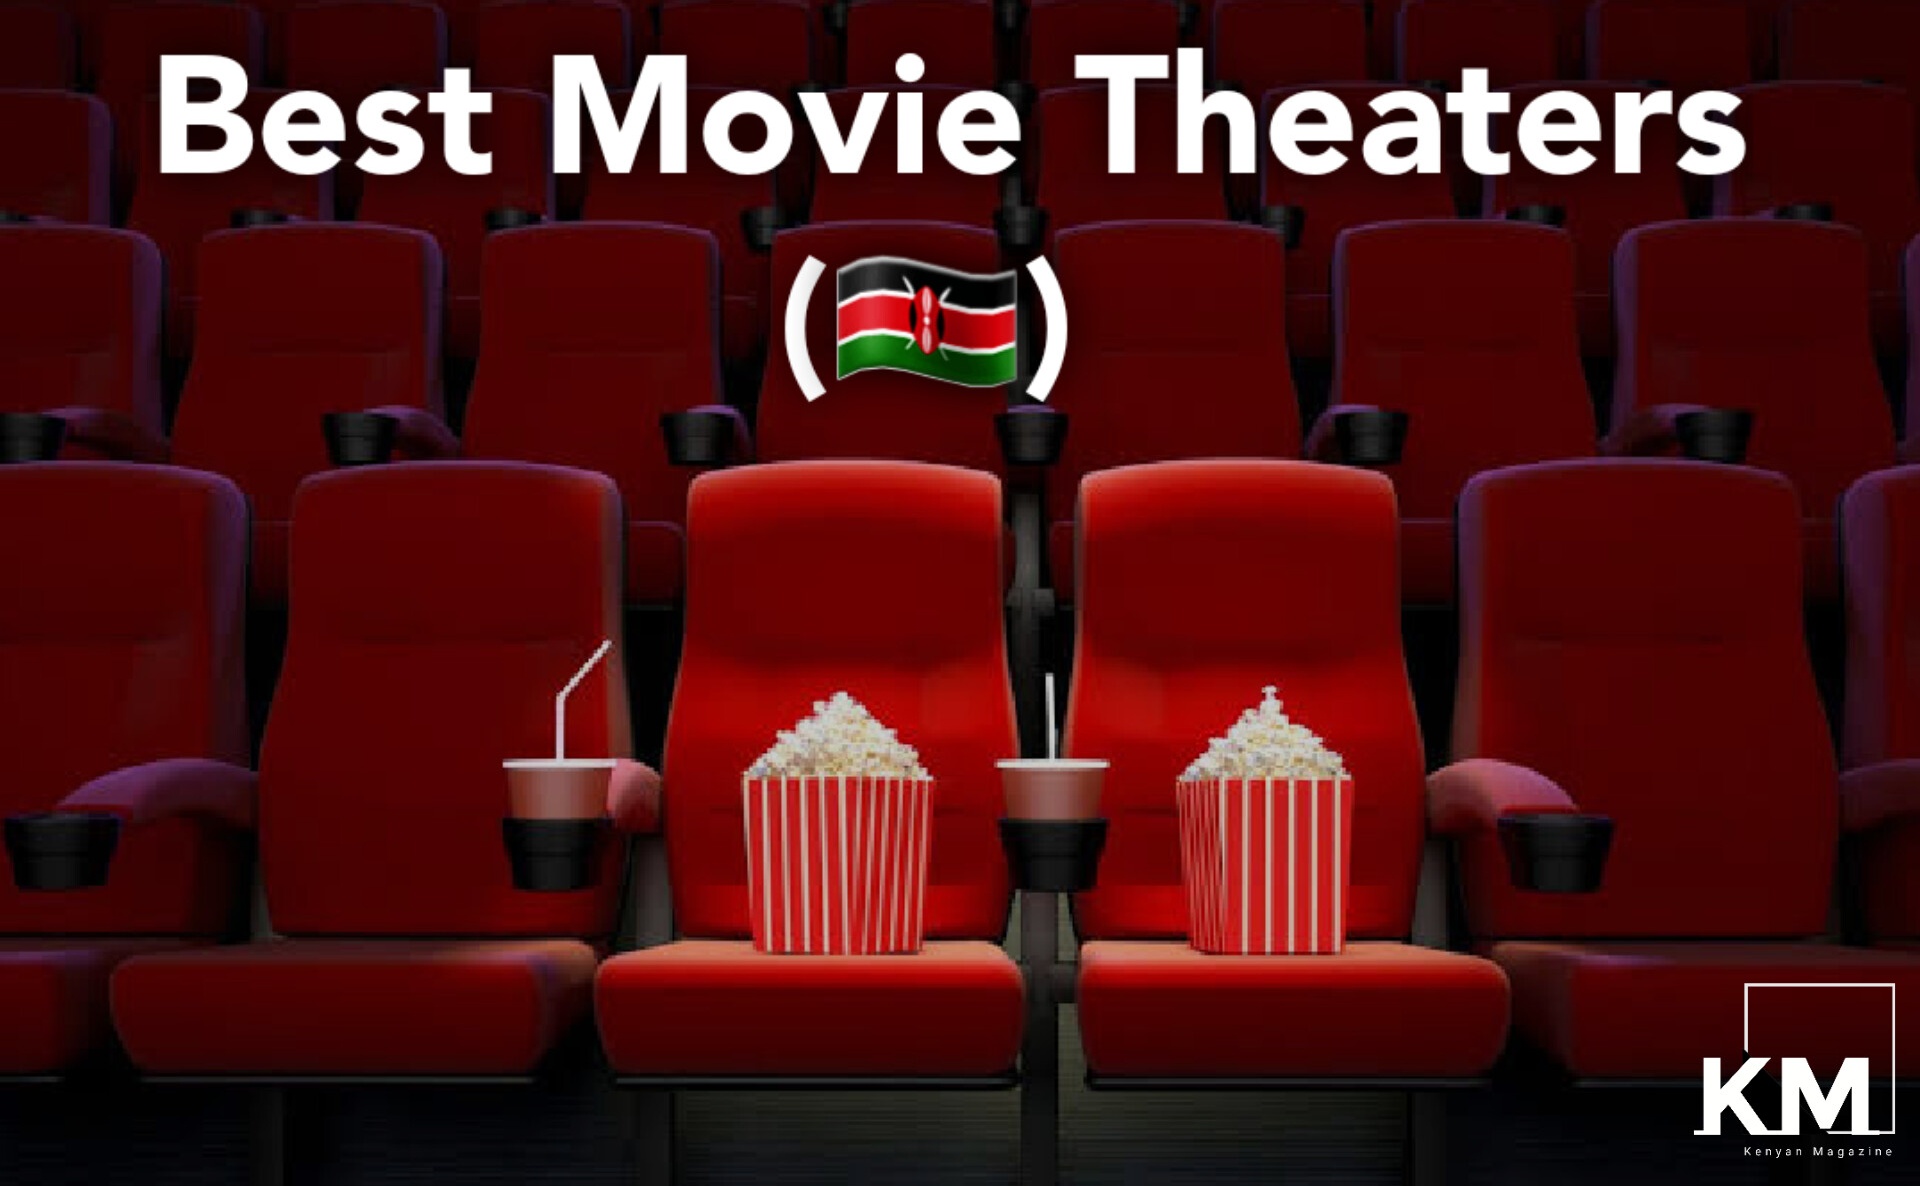 Movie Theaters in Kenya